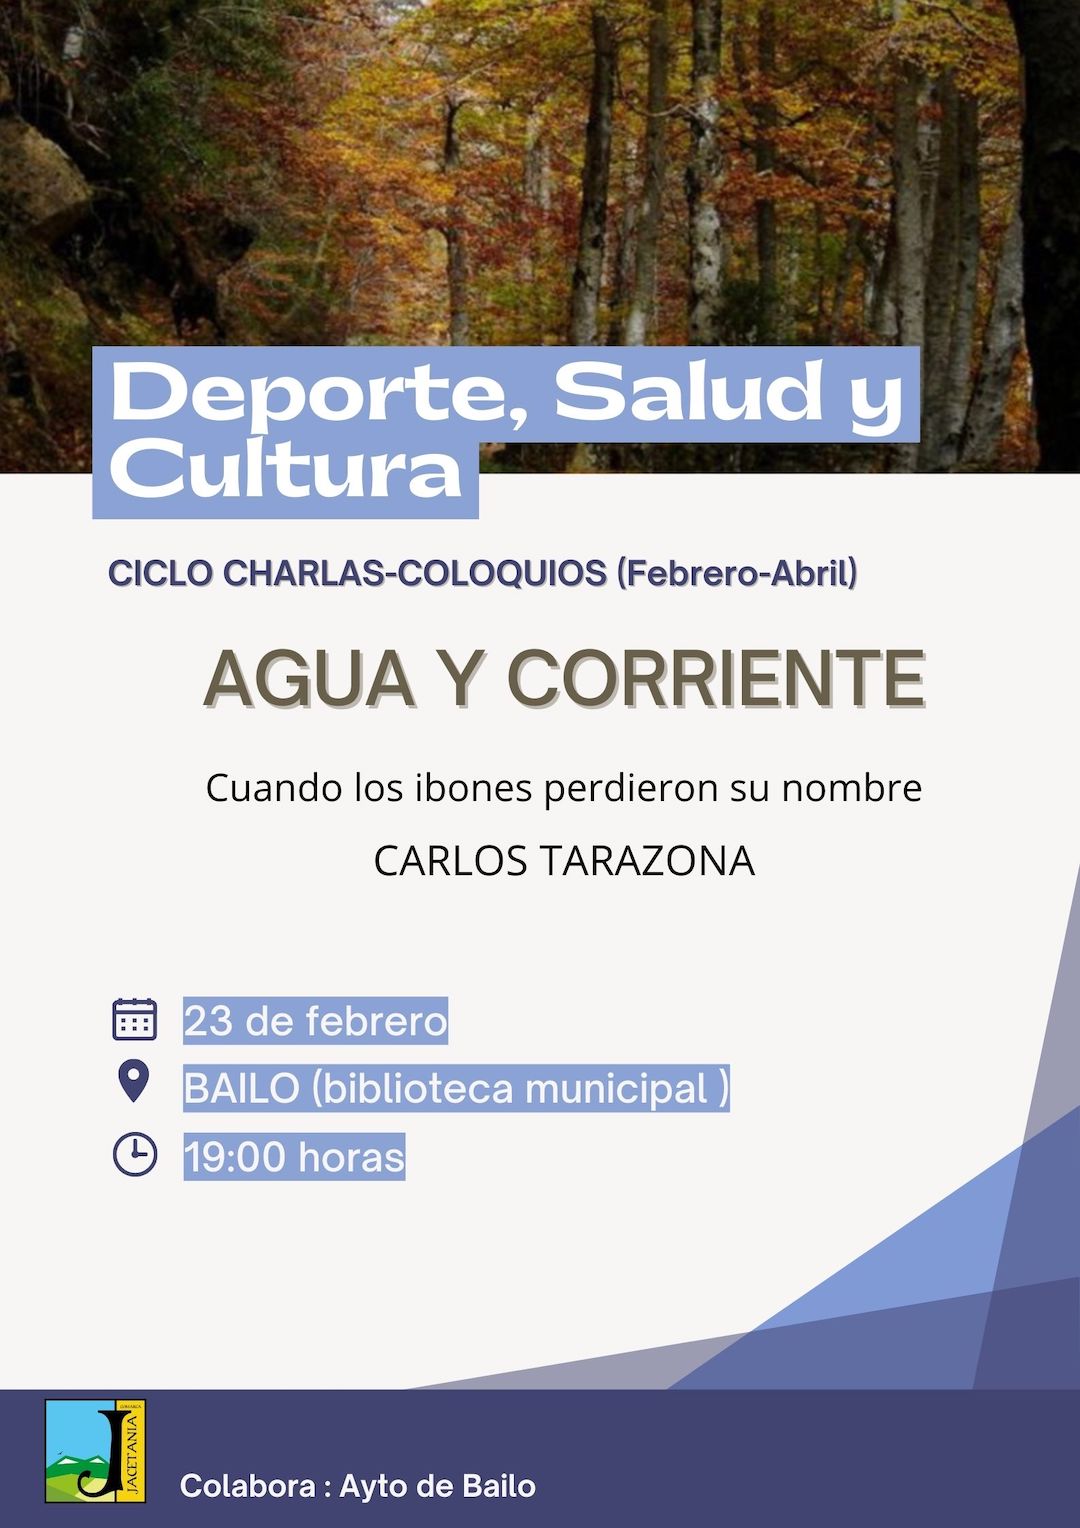 Nuevo Ciclo de Charlas - Coloquio con Carlos Tarazona